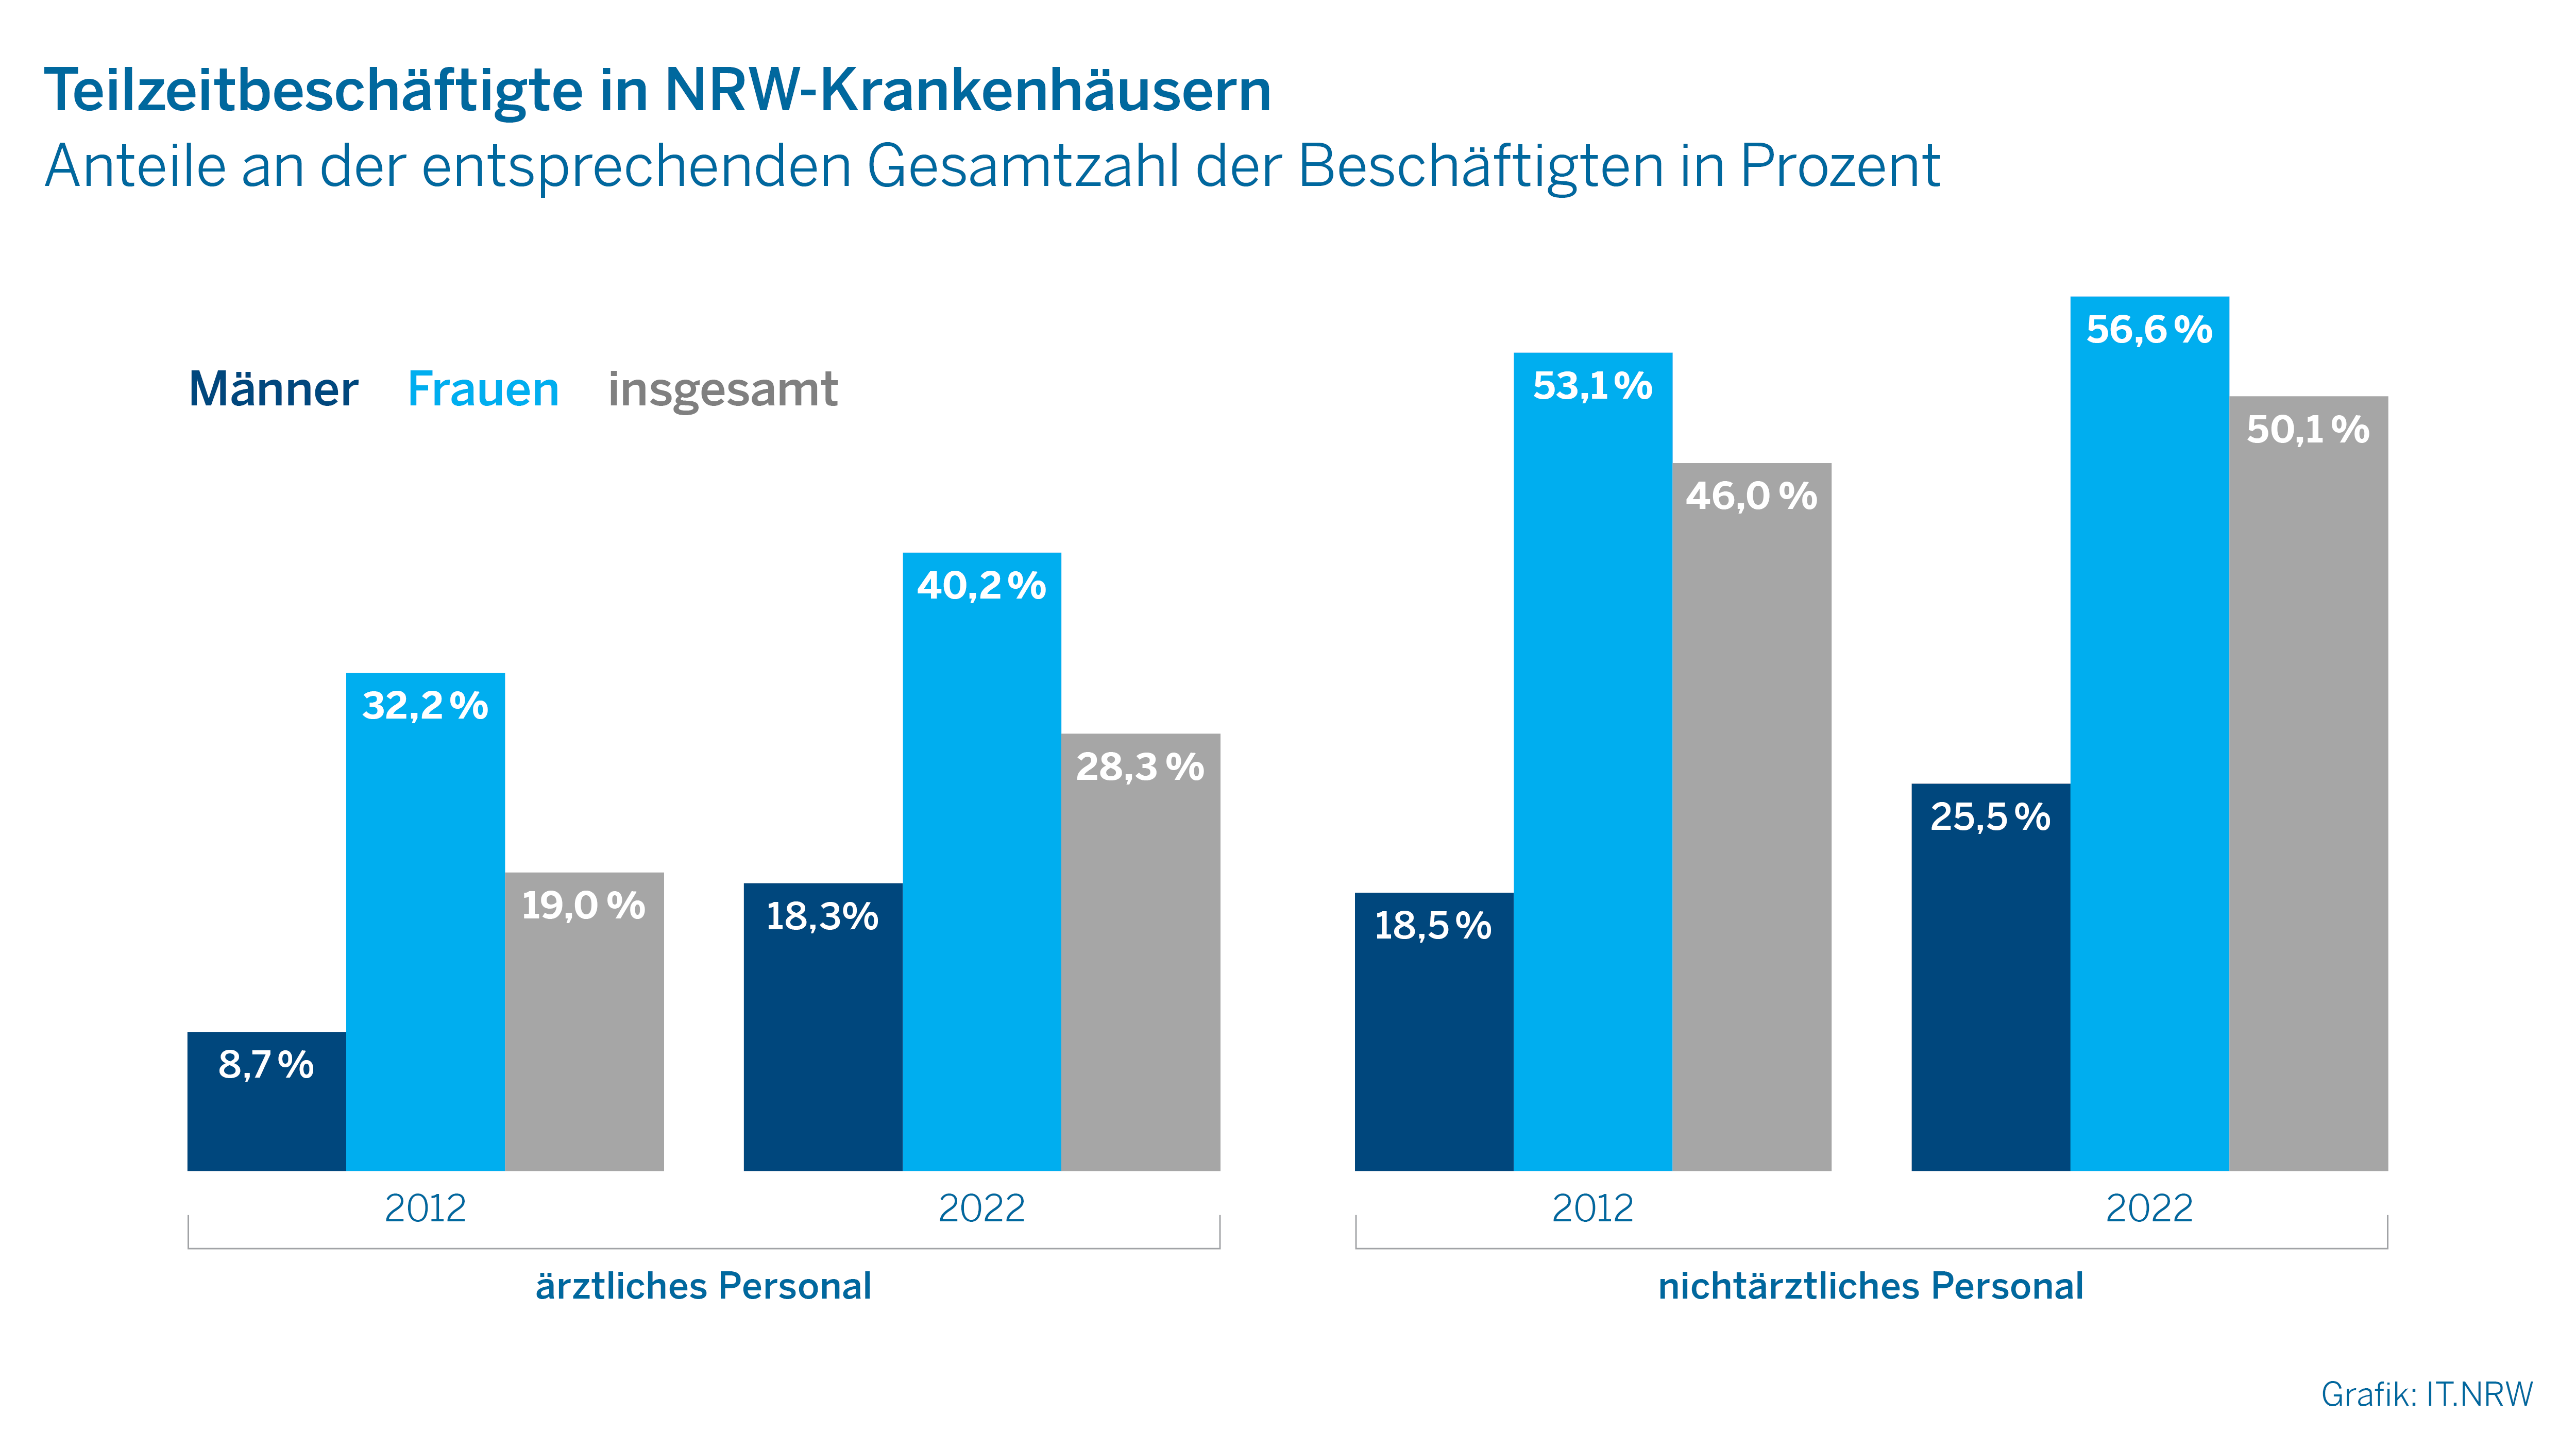 Teilzeitbeschäftigte in NRW-Krankenhäusern